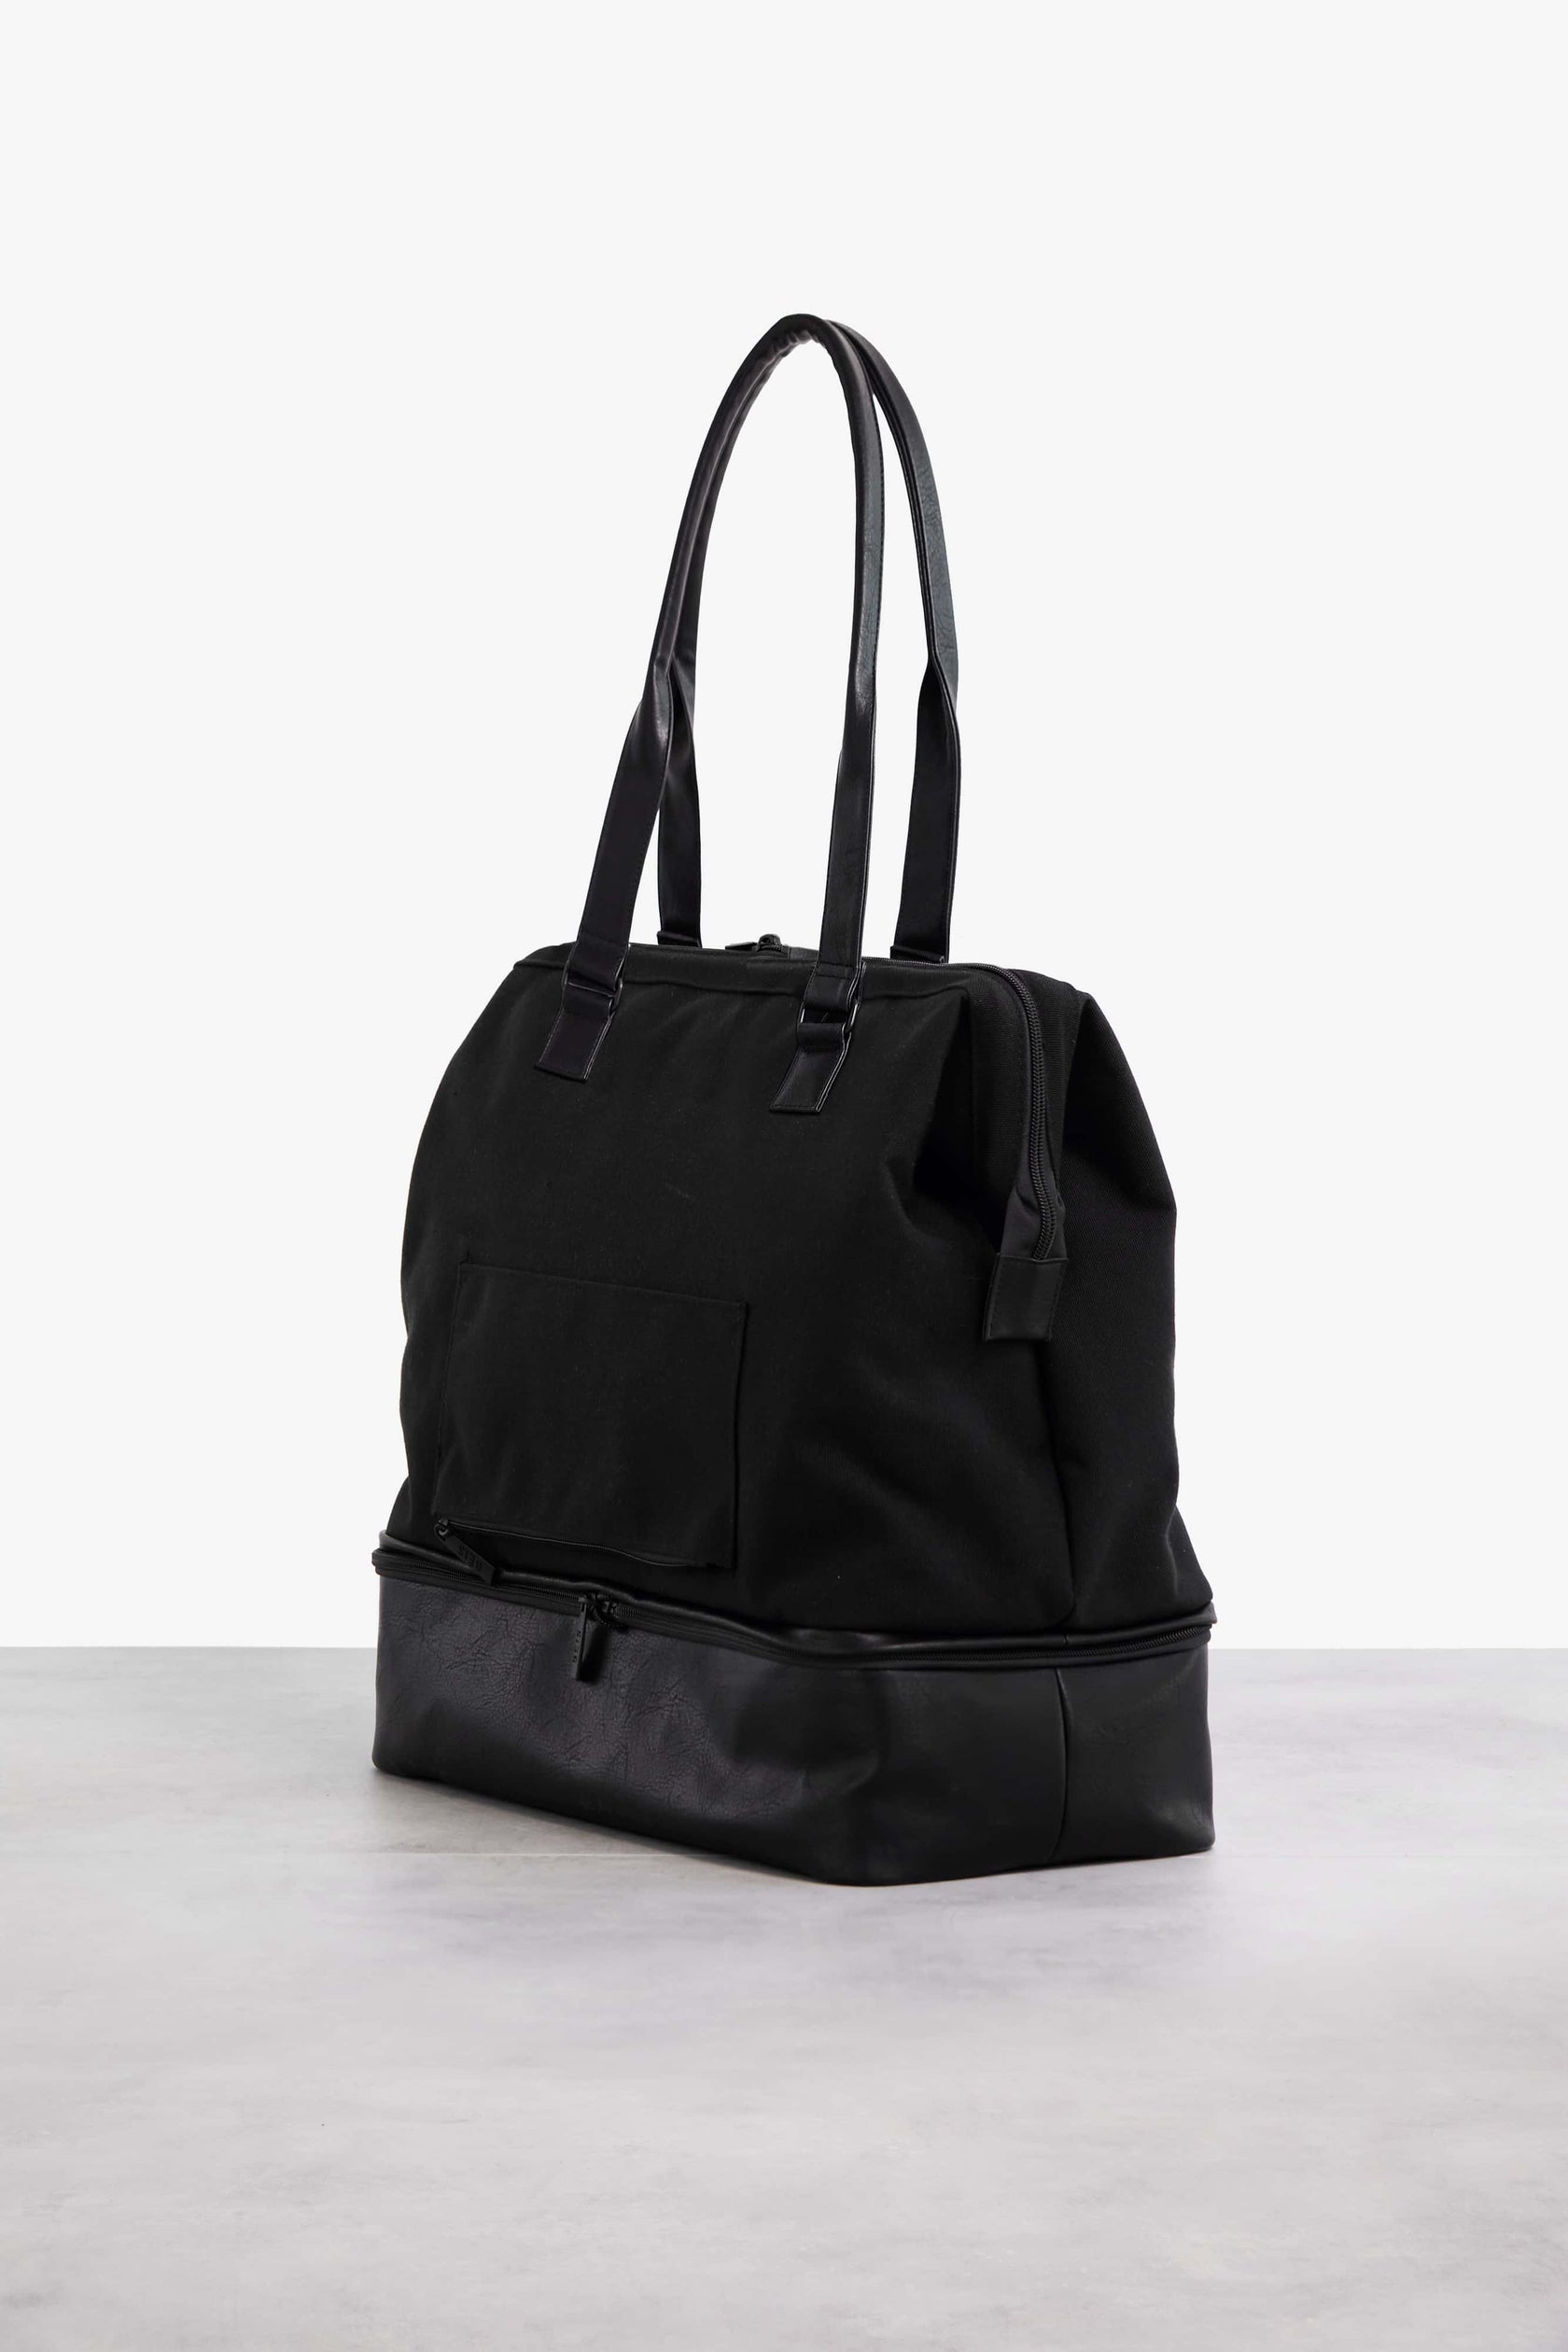 Béis 'The Convertible Mini Weekender' in Black - Small Weekend Bag ...